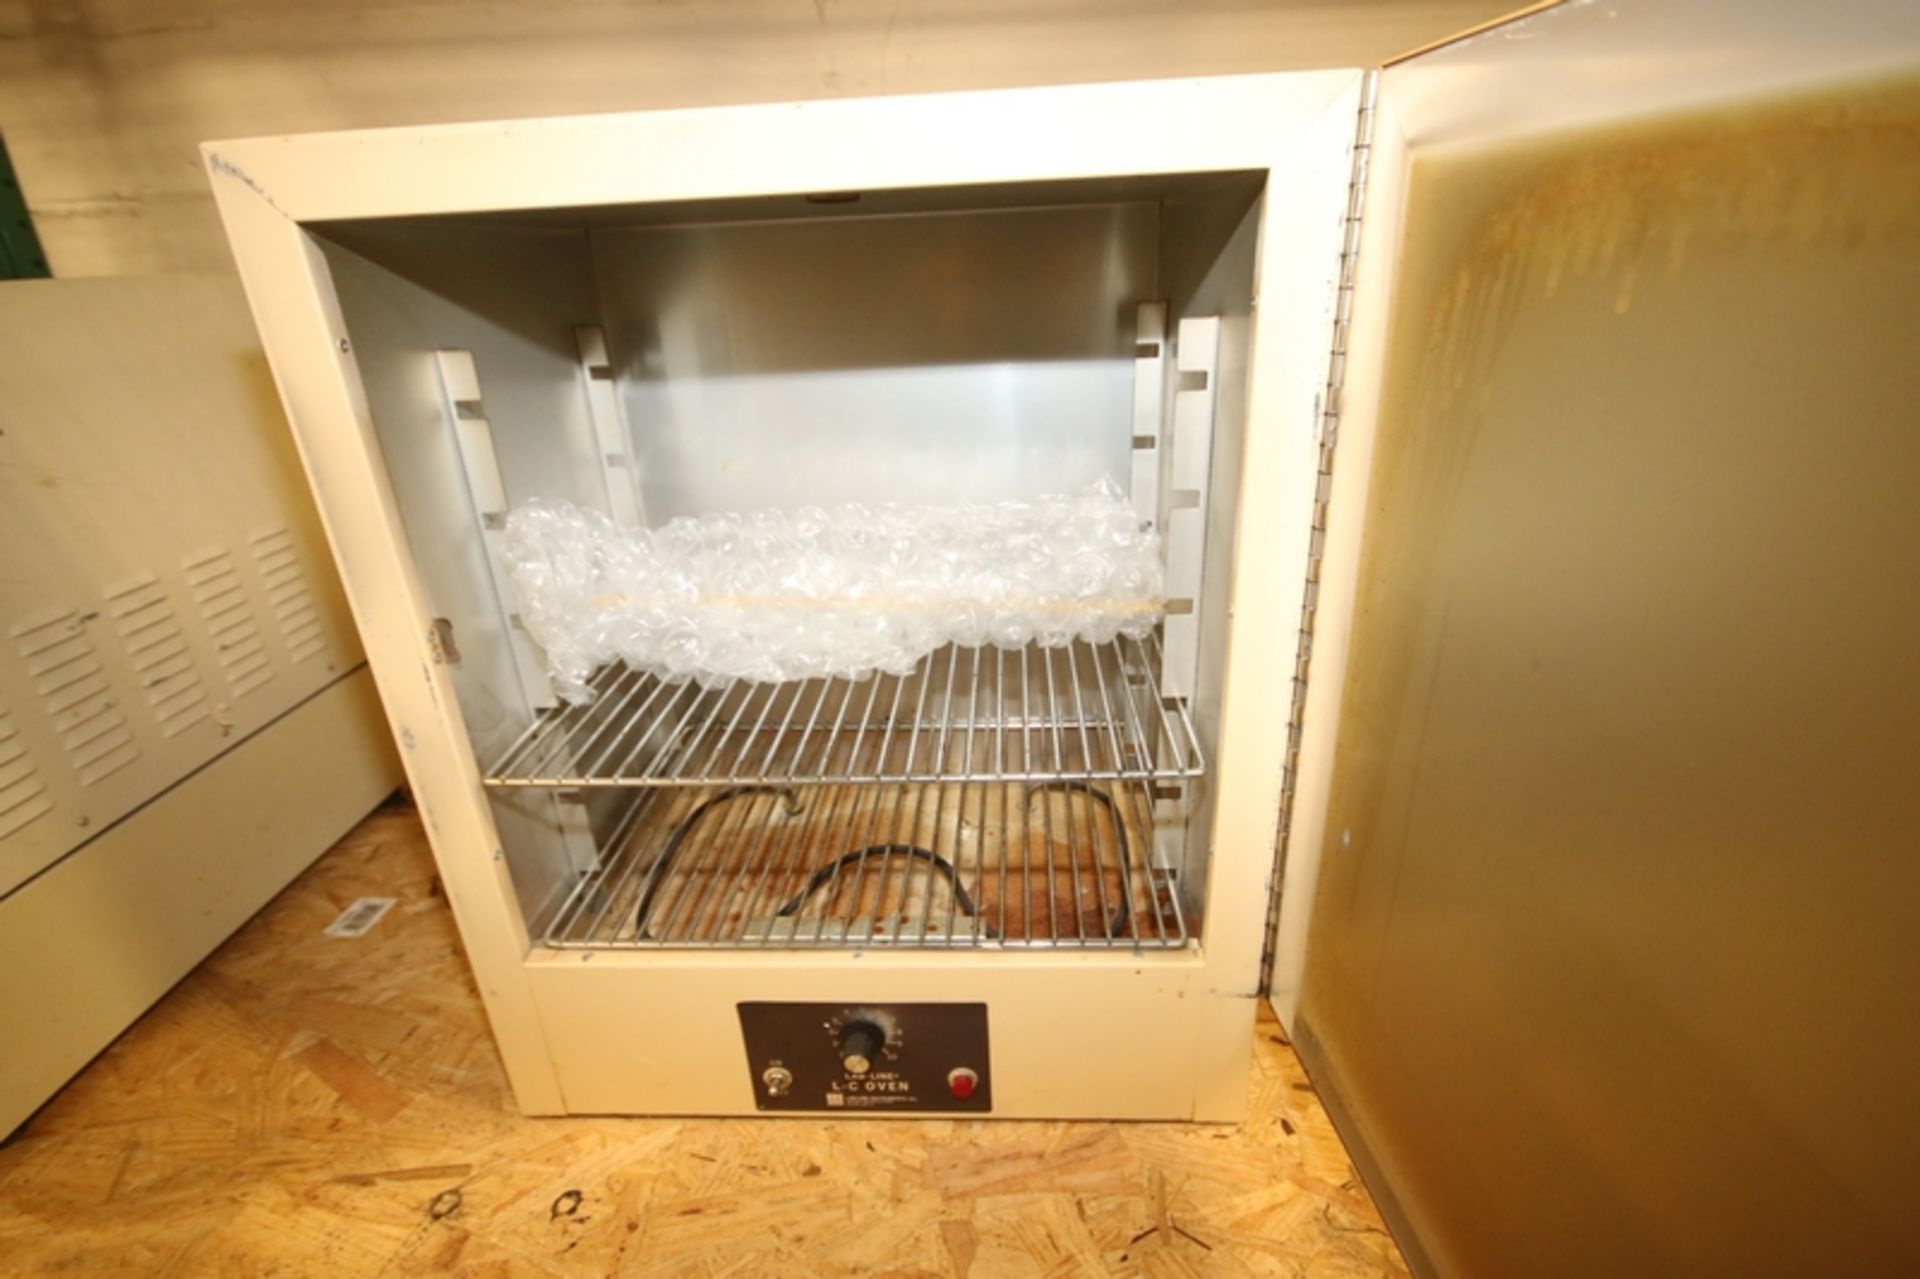 Lab-Line L-C Oven, Model 3511, S/N 0241 - Image 2 of 2